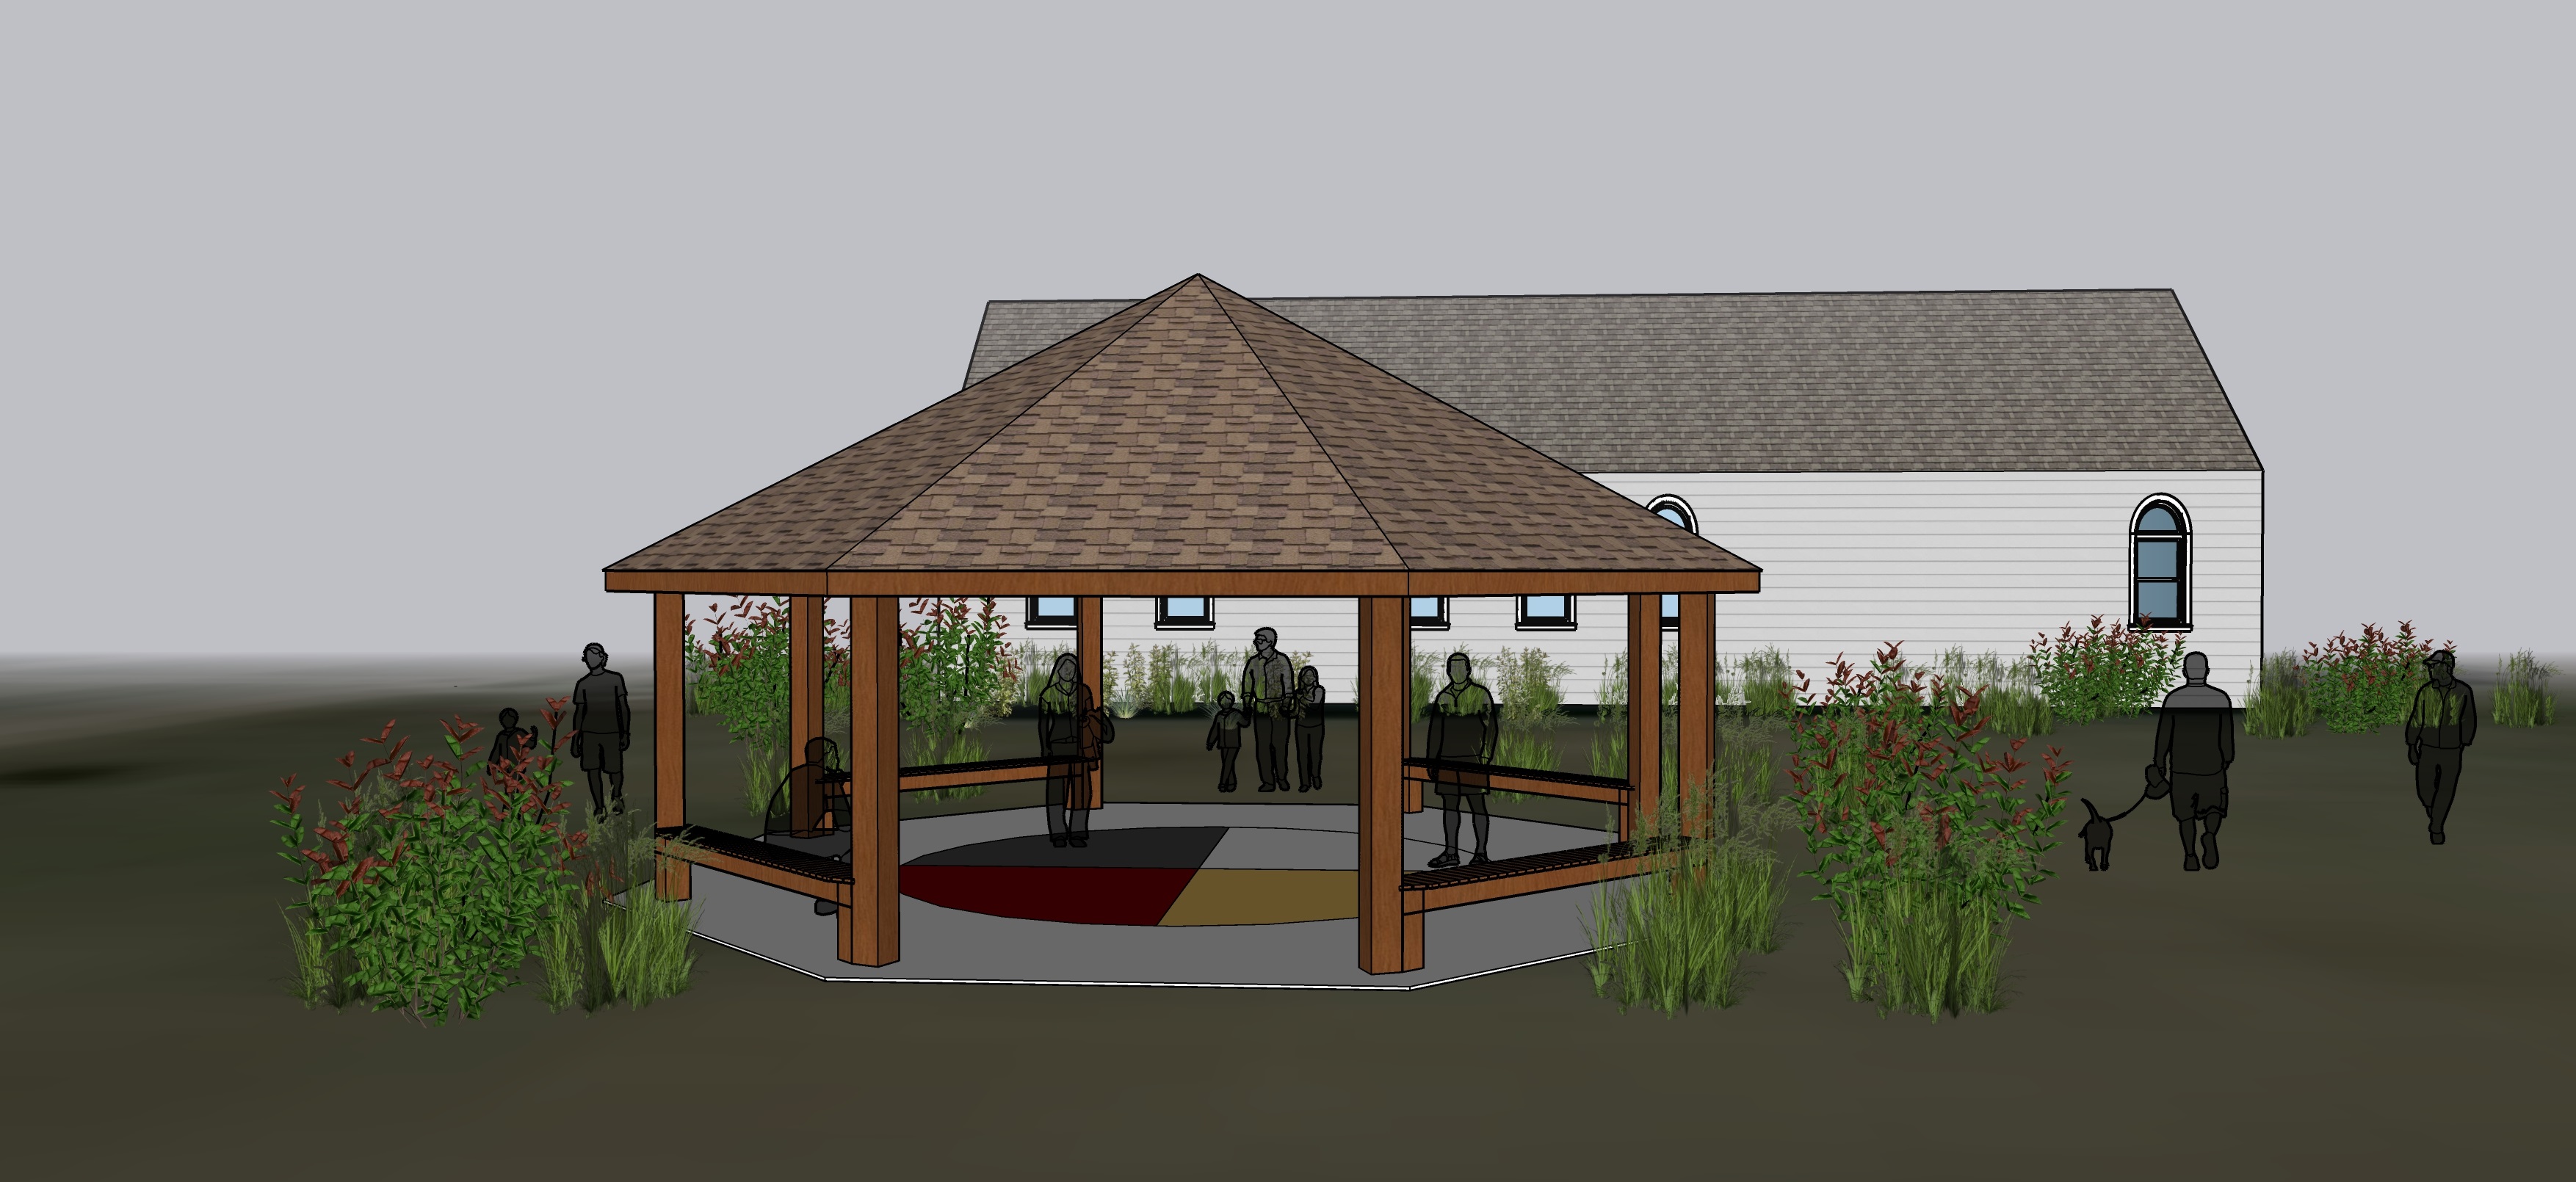 Pavilion-rendering.jpg